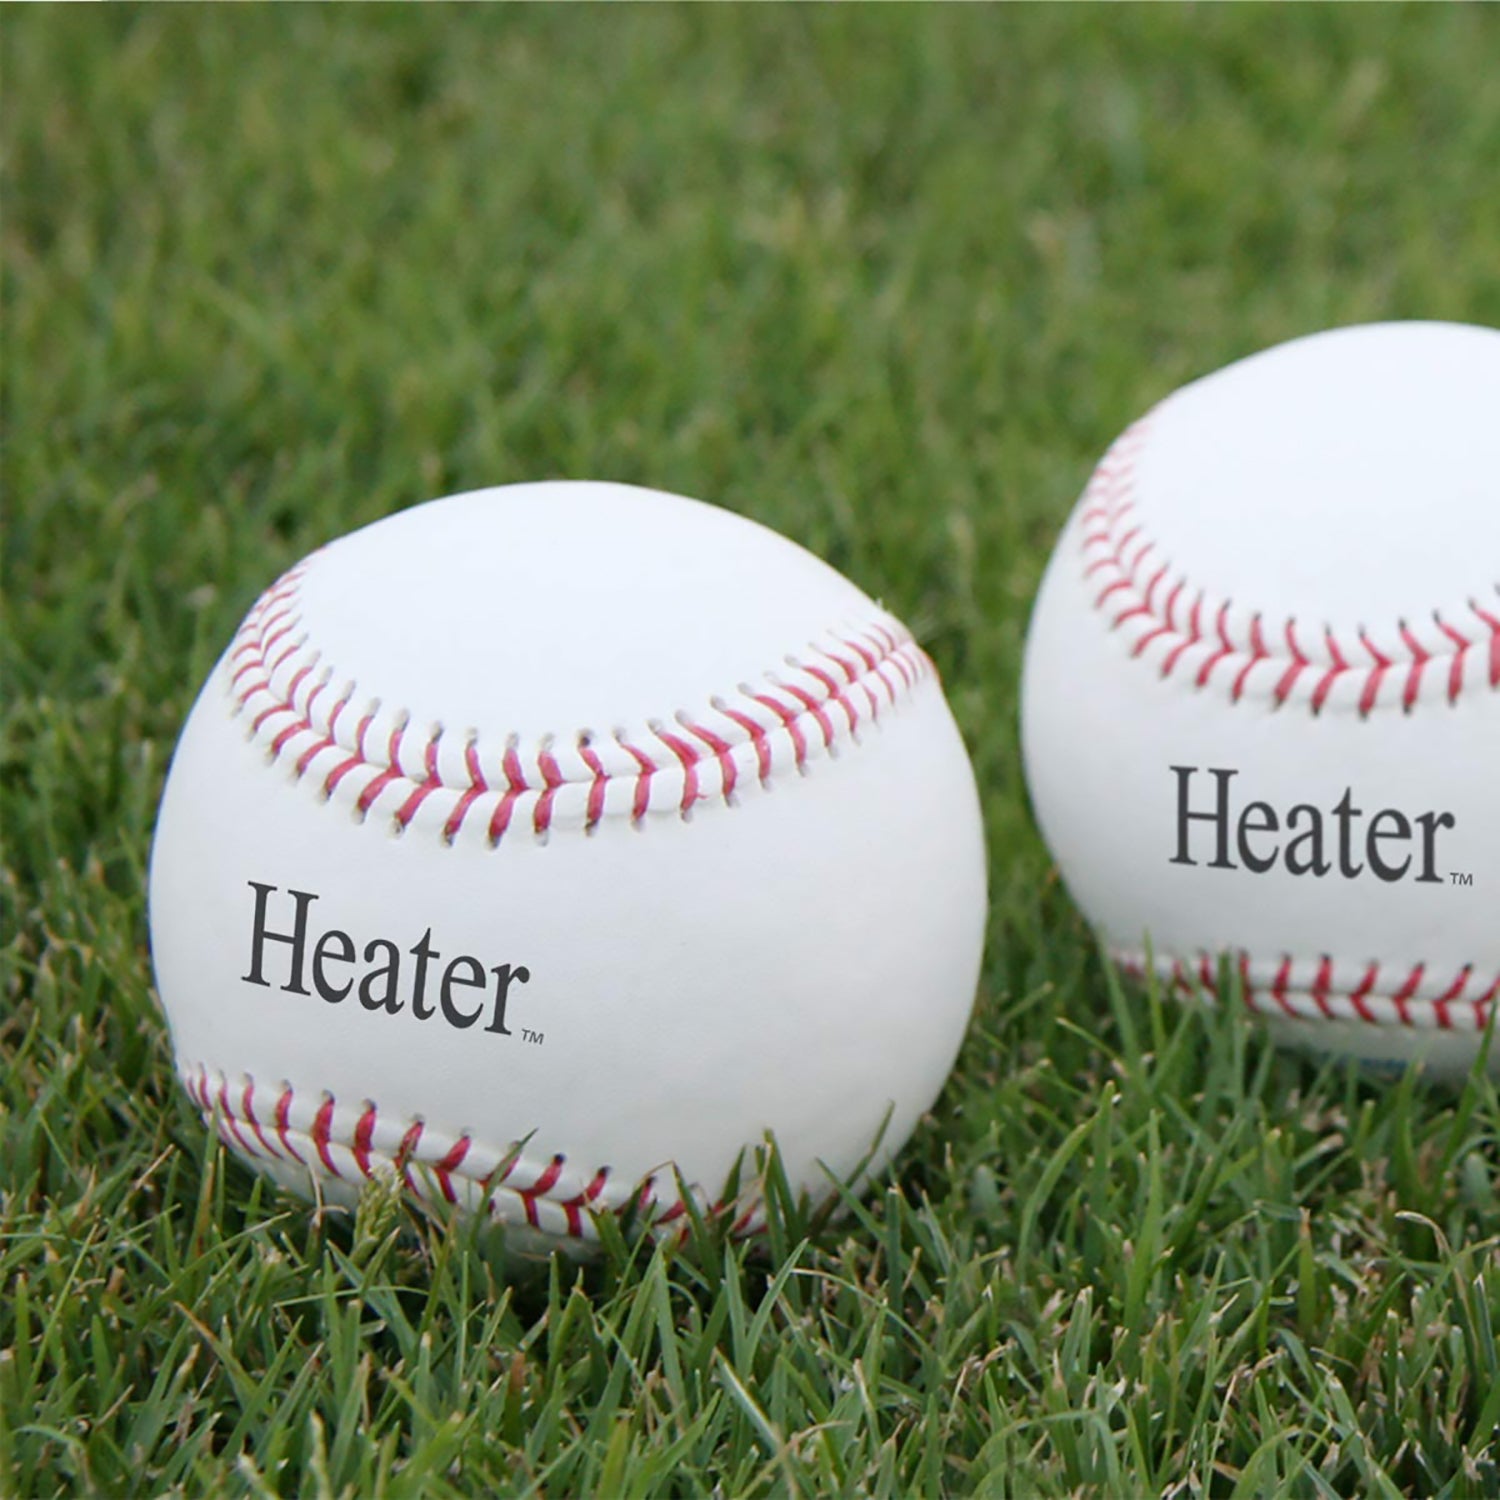 Heater Sports Regulation SIzed Leather Pitching Machine Baseballs - 12 Pack - Pro-Distributing